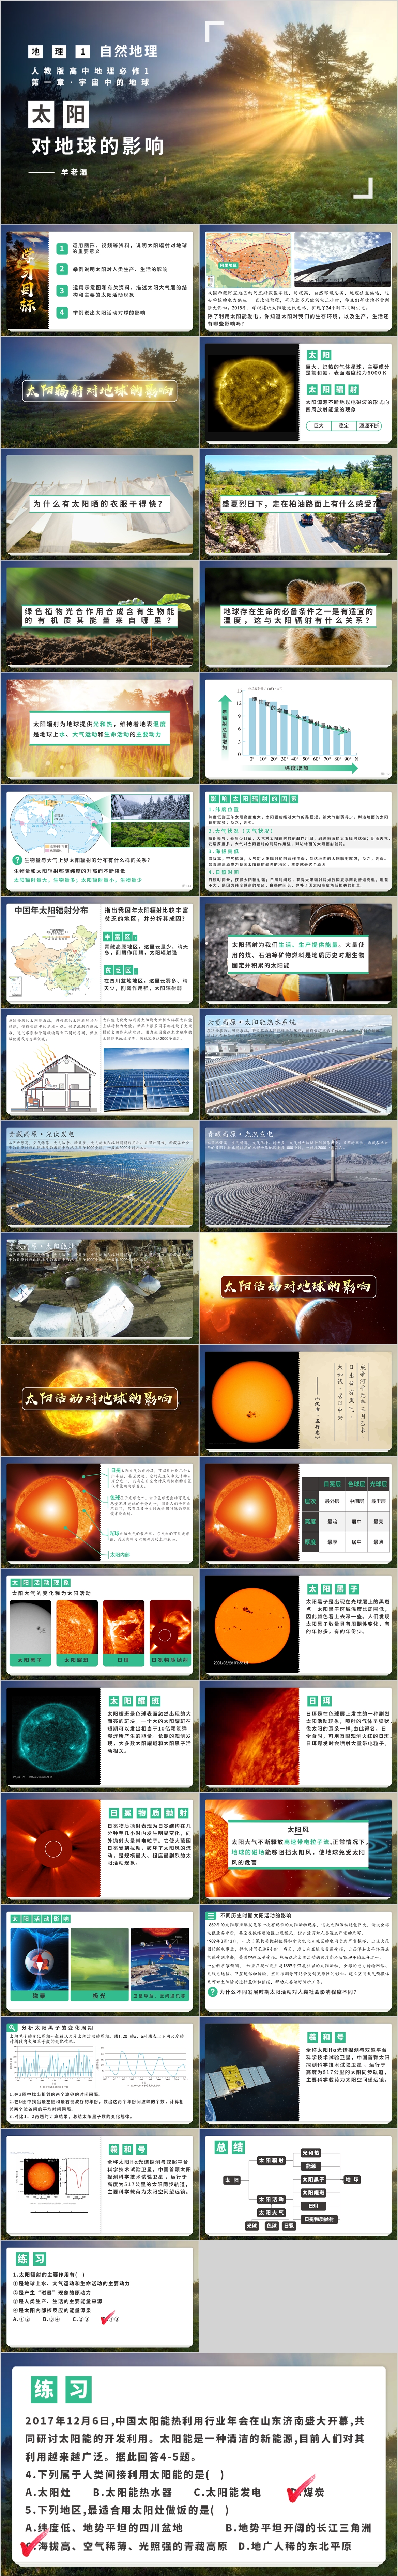 1.2太阳对地球的影响.jpg